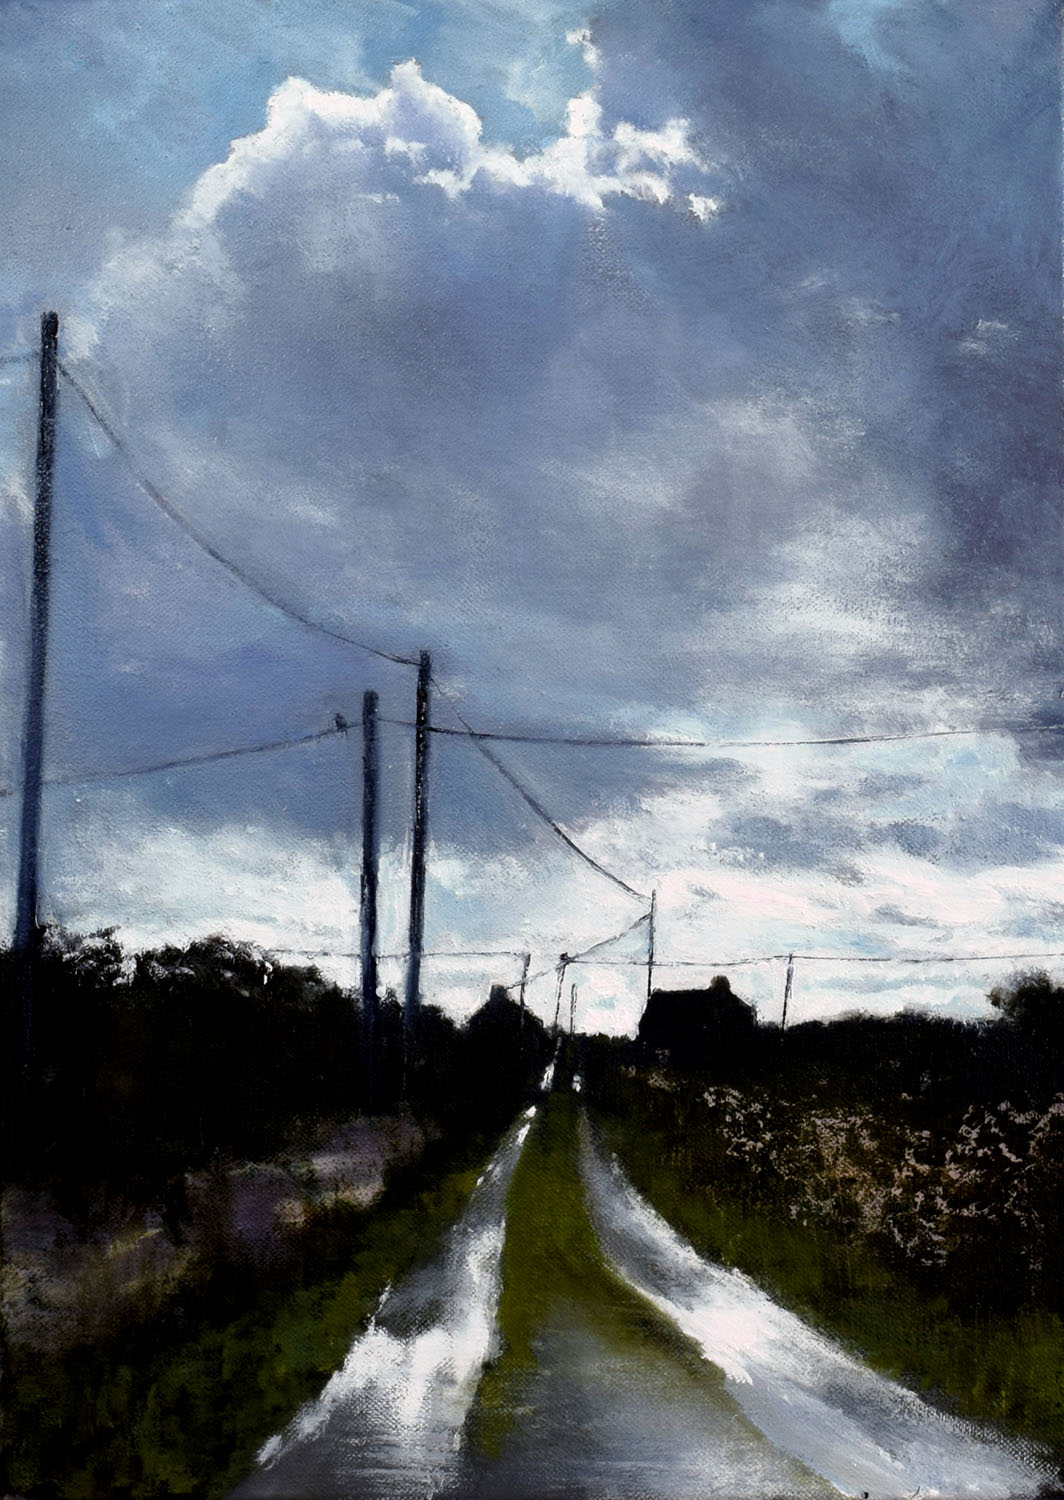 John O'Grady Art, The Road to the Sea | Irish landscape painting of west coast of Ireland on a rainy day